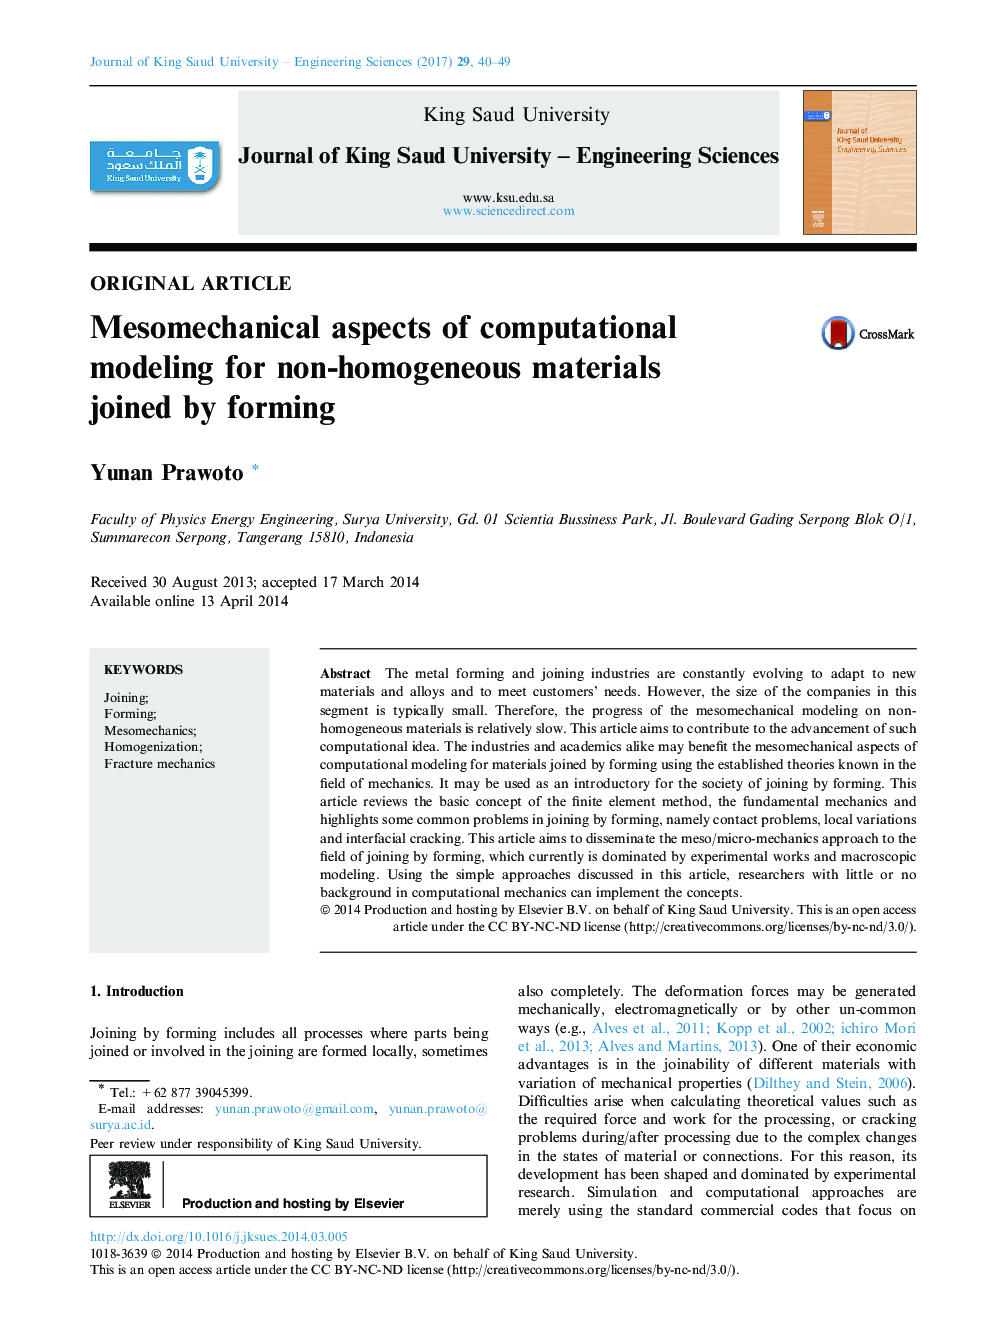 جنبه های اصلی مقاله مولفه های مکانیکی مدل سازی محاسباتی برای مواد غیر همگن با تشکیل شده است 